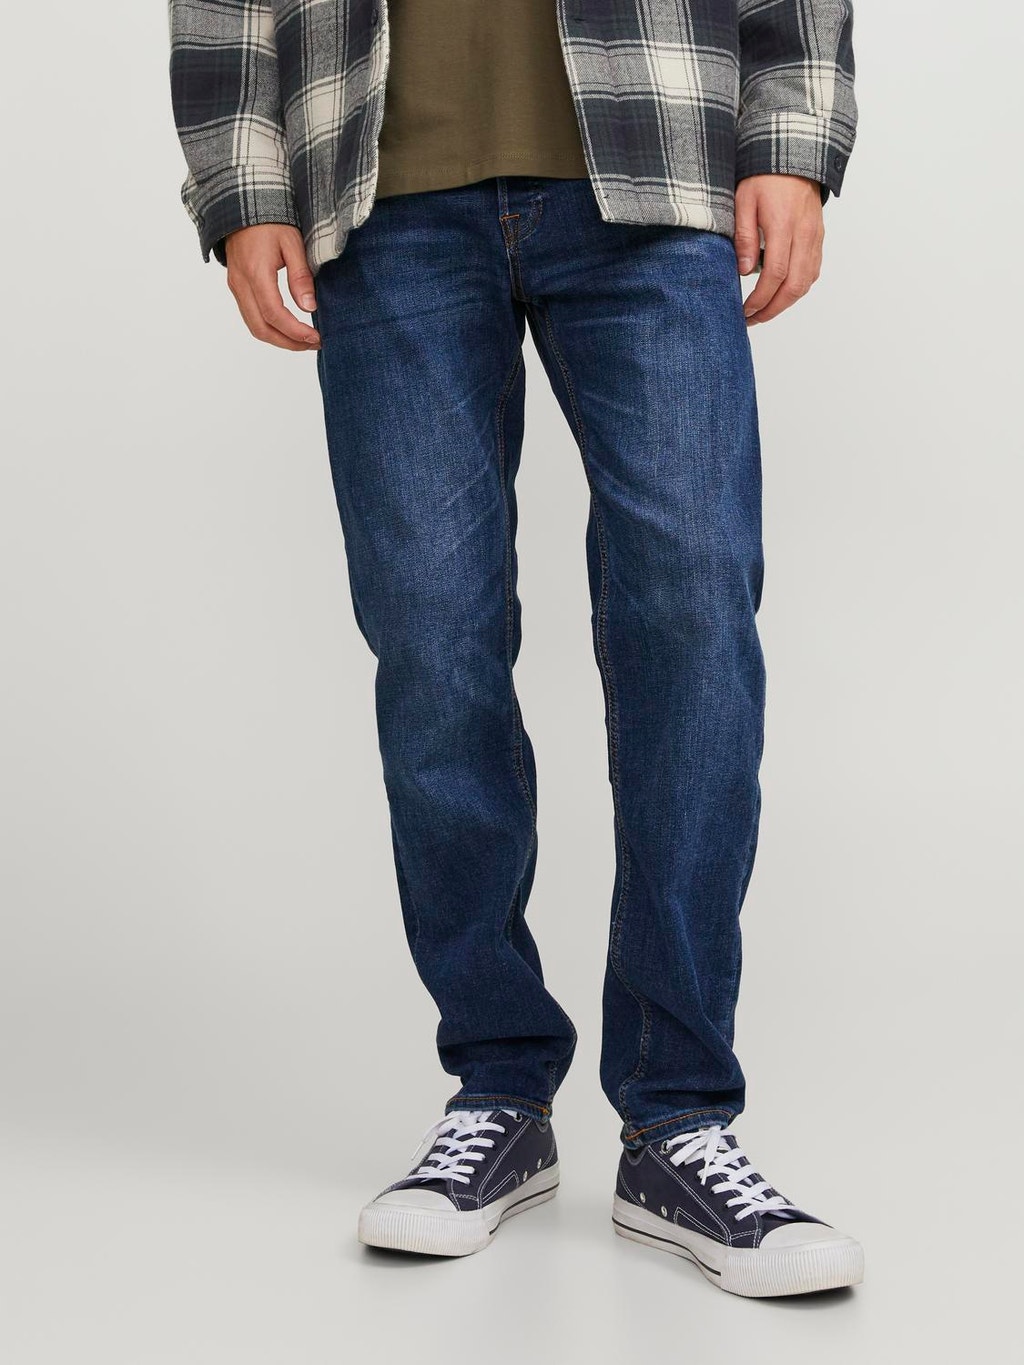 Behandeling ambitie compromis MIKE ORIGINAL AM 814 Comfort fit jeans